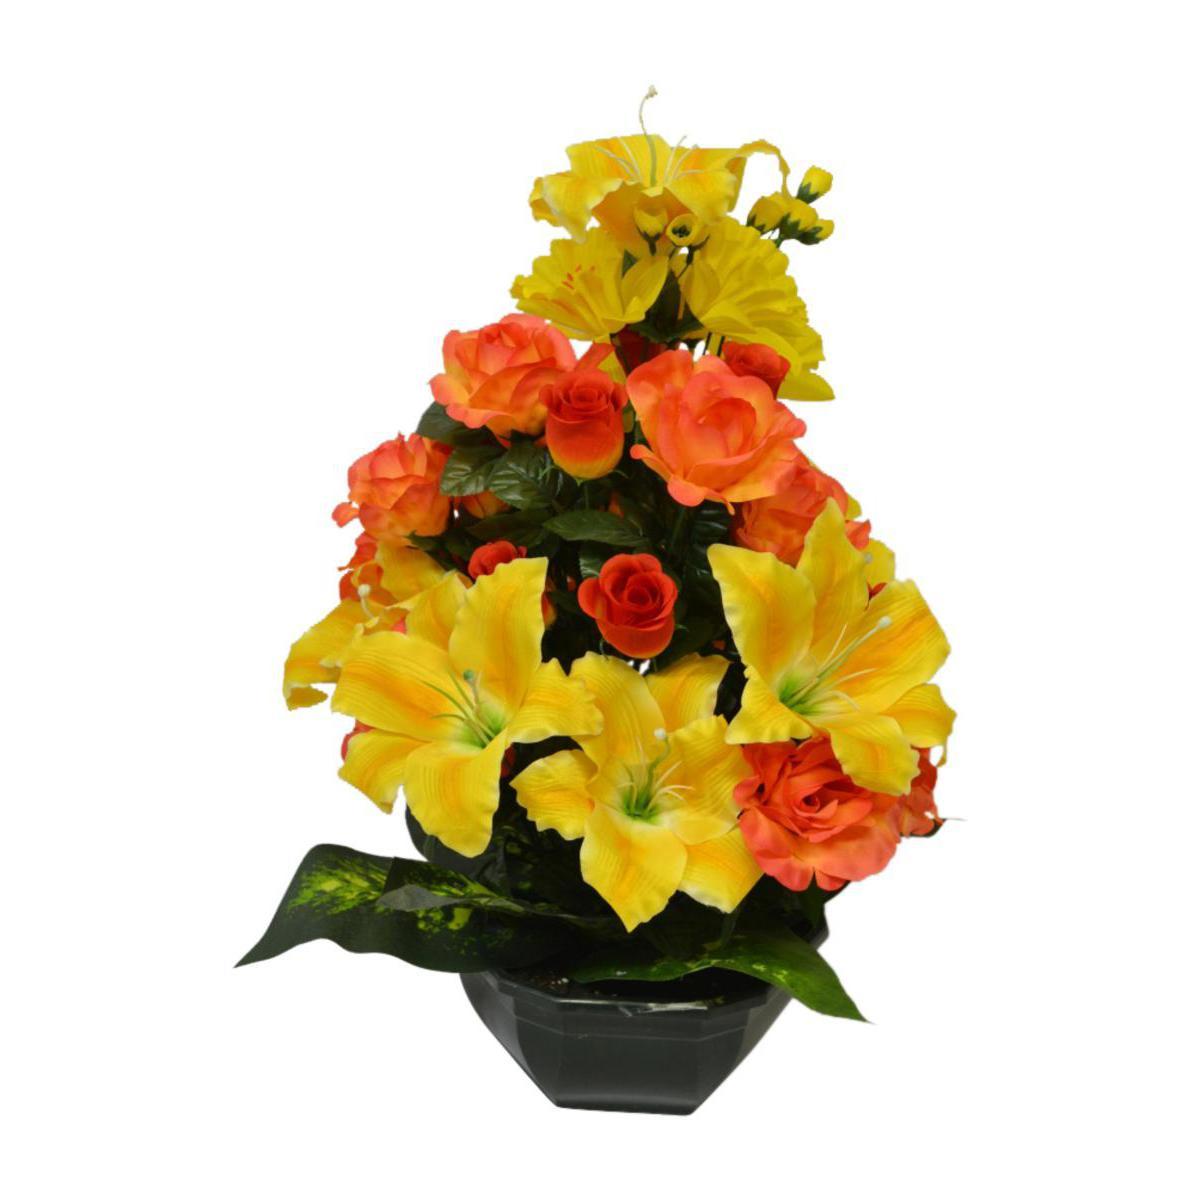 Vasque de roses, boutons de roses, lys et jonquilles - Polyester - H 53 x D 23 cm - Orange et jaune